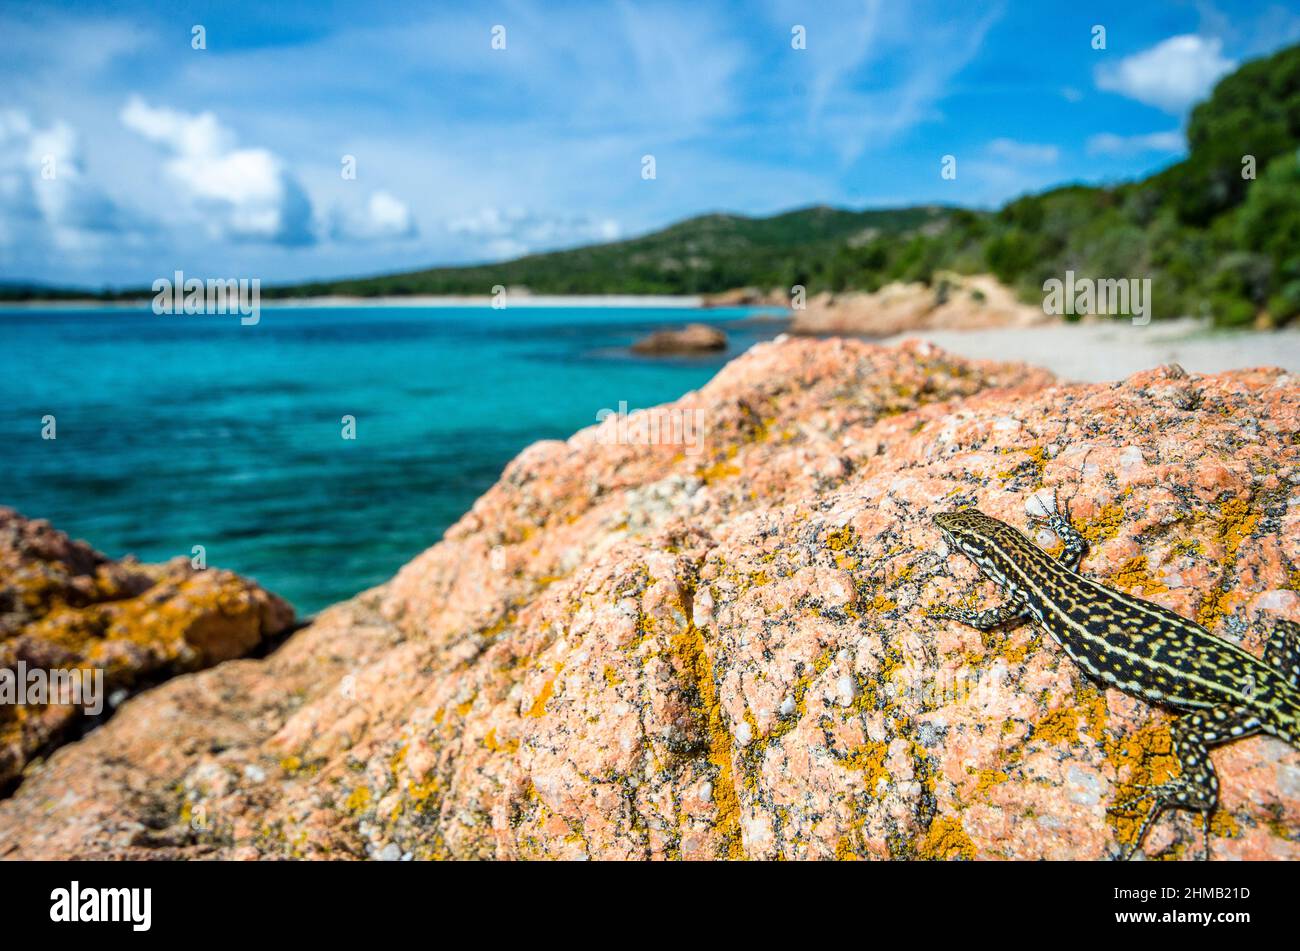 Tyrrhenian wall lizard (Podarcis tiliguerta), coastal landscape, Corsica, France. Stock Photo